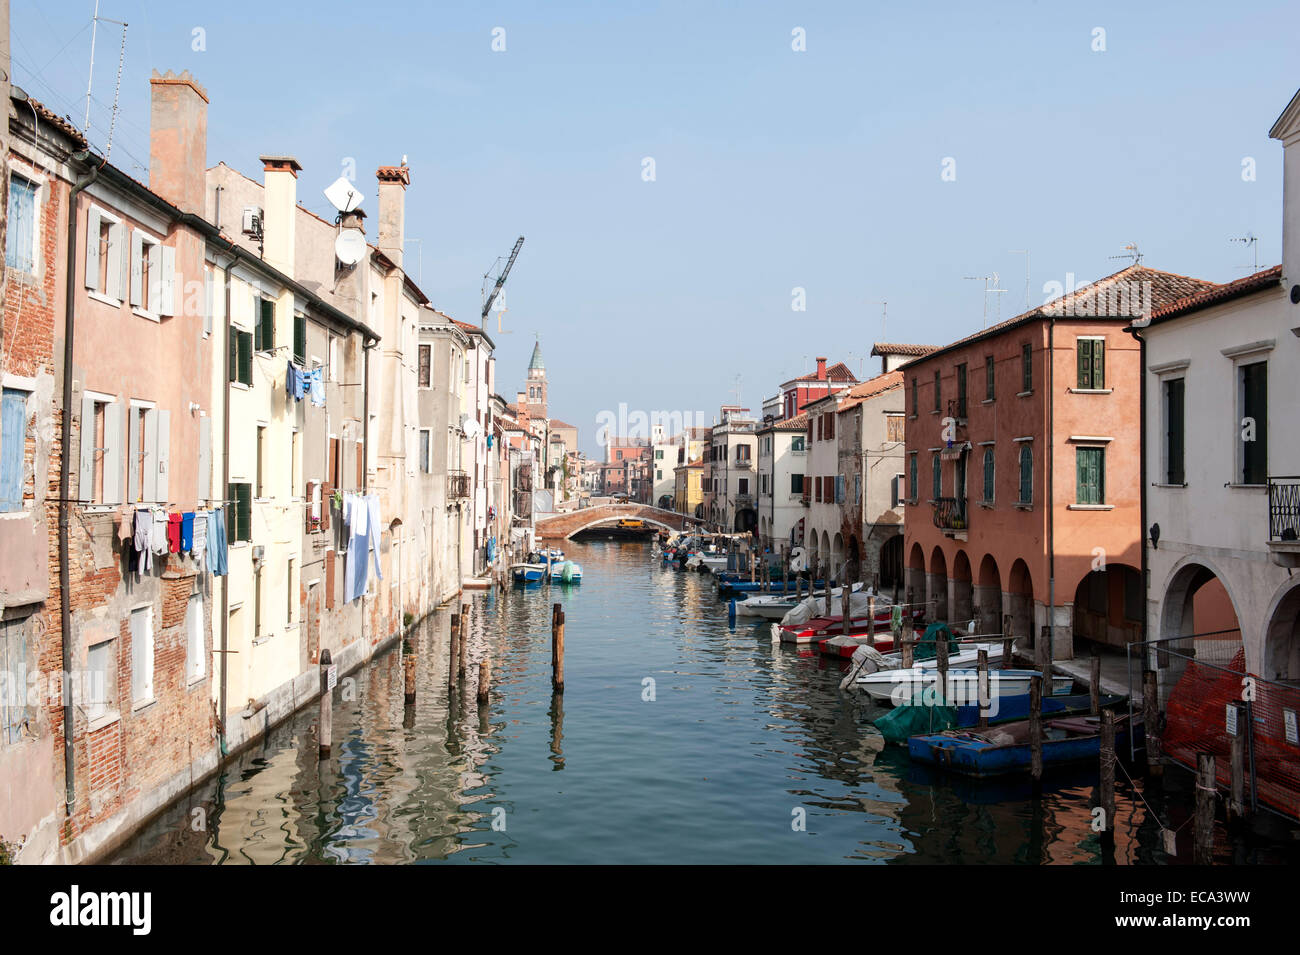 Case sul Canal Vena nel centro storico, Chioggia, Veneto, Italia Foto Stock